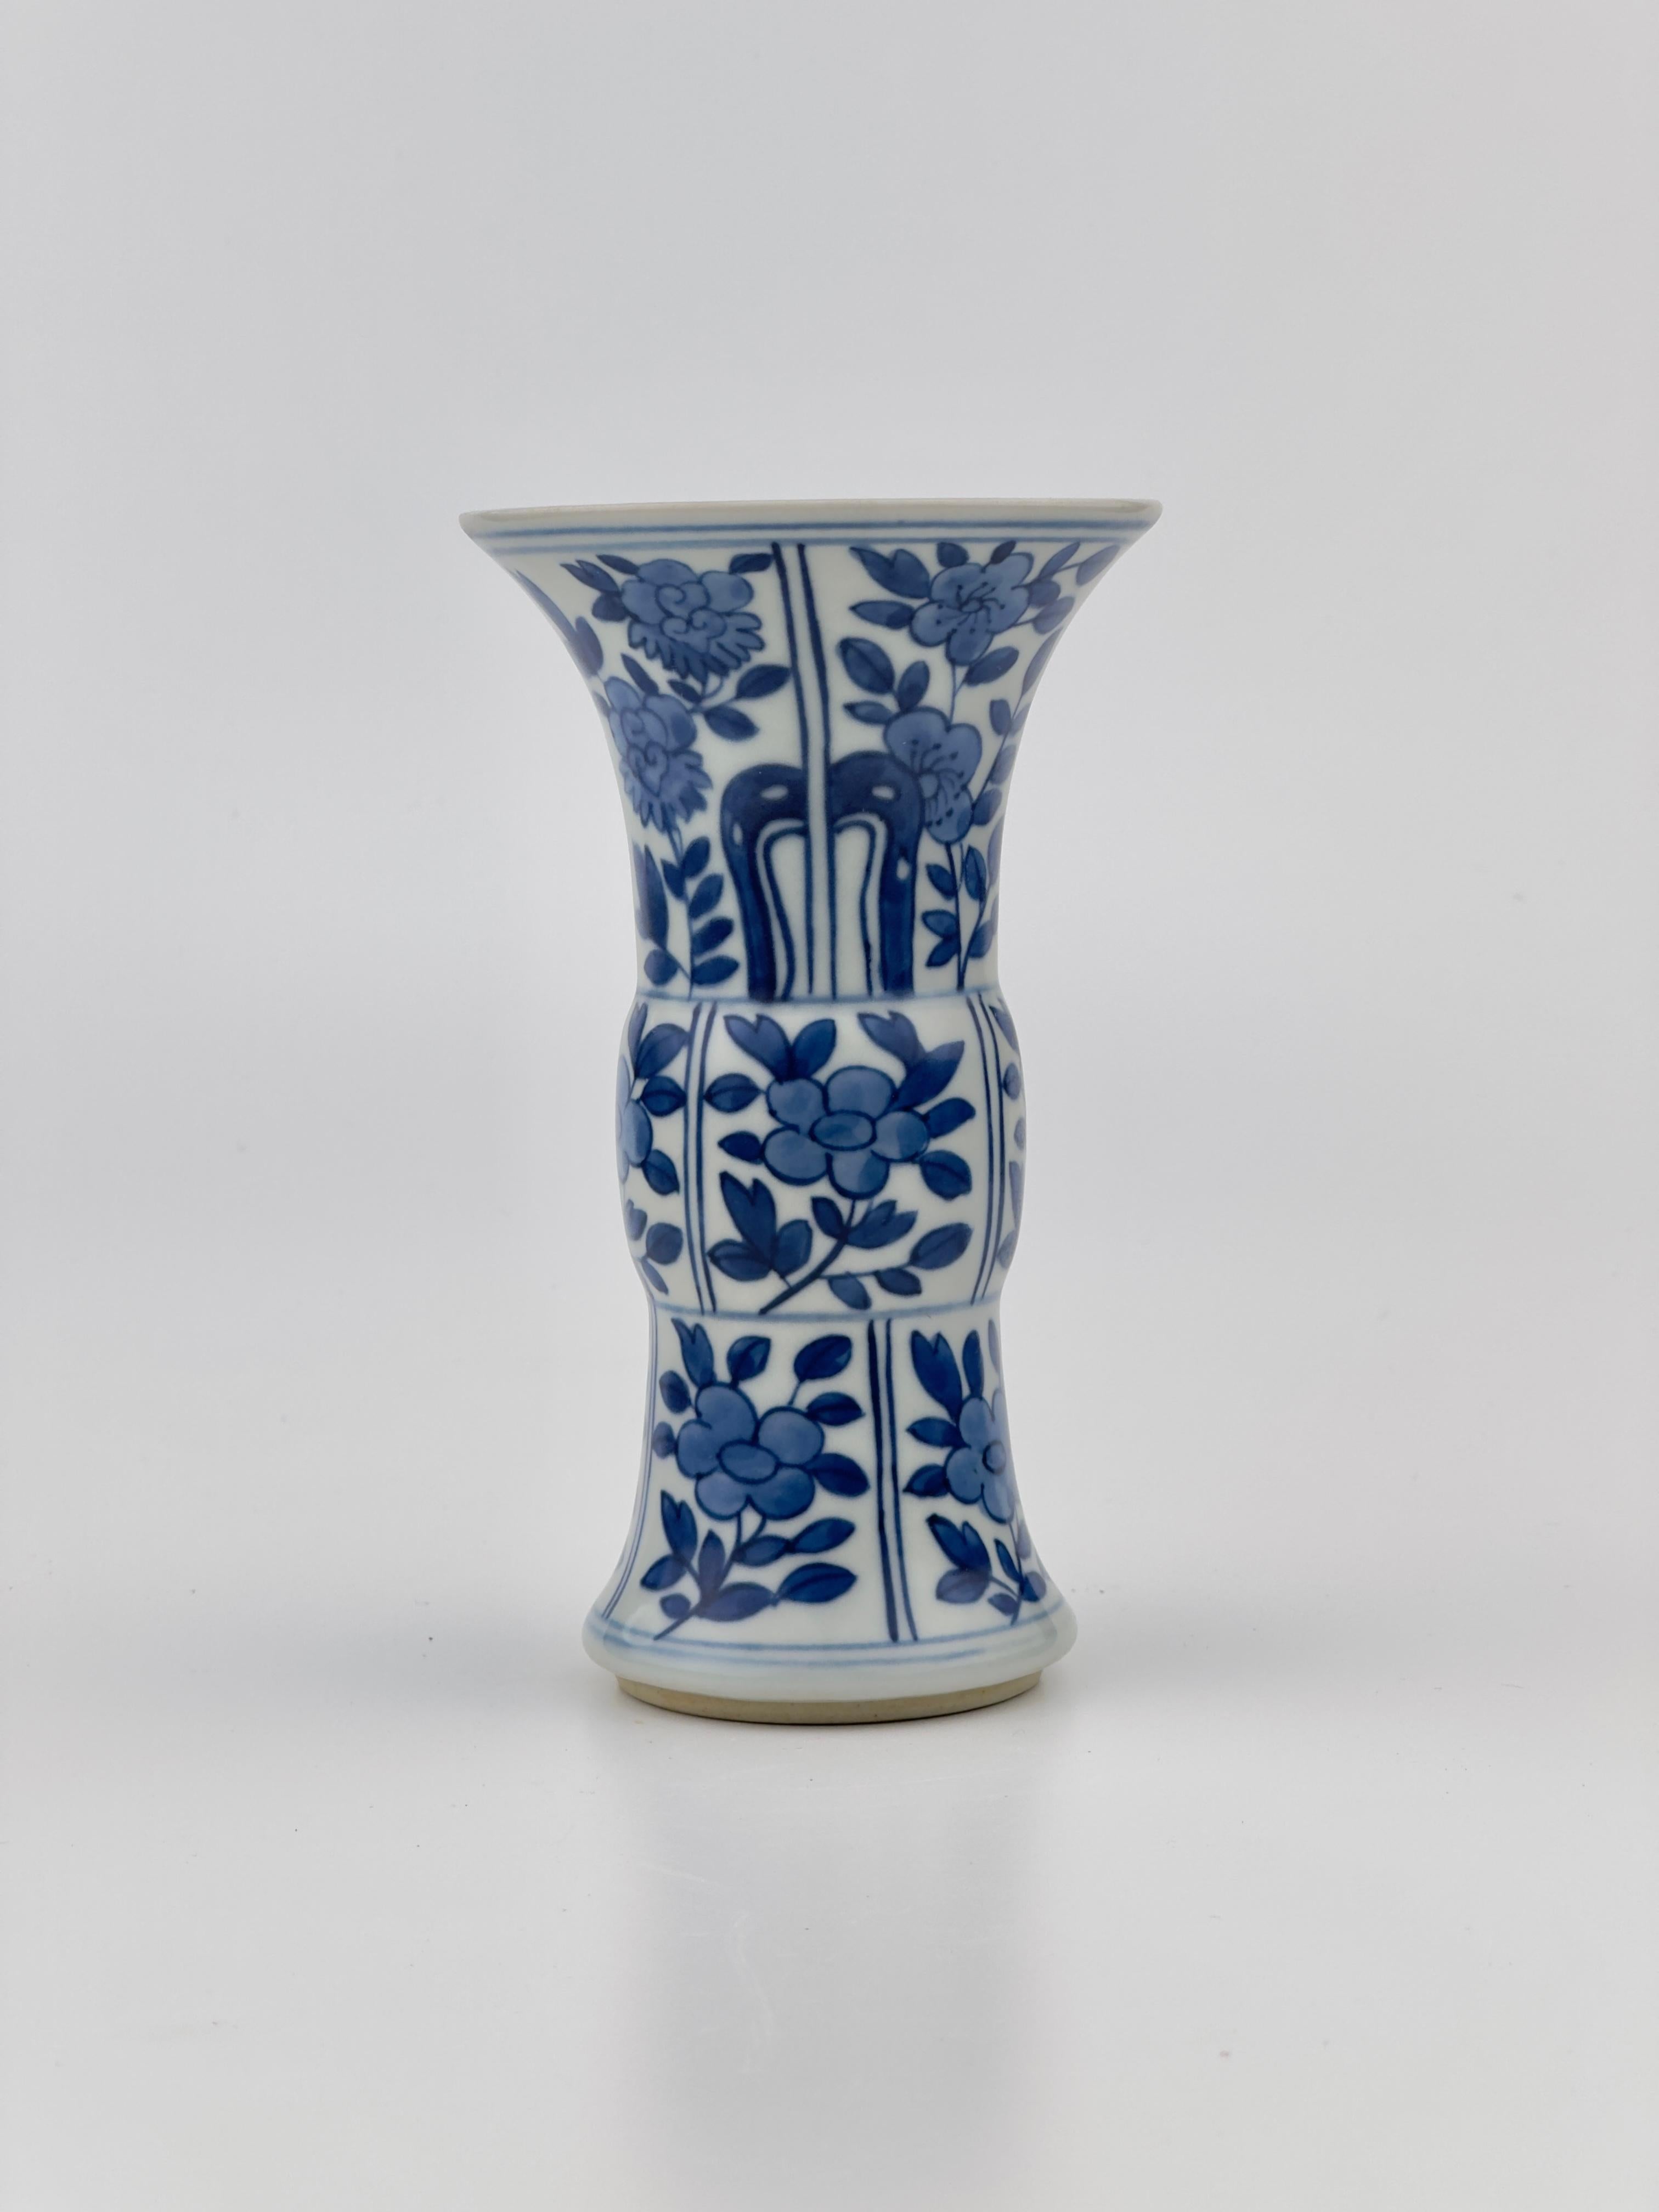 Un joli vase GU peint à la main en bleu cobalt avec des panneaux de fleurs typiques de Kangxi séparés par des bordures lignées. 

Période : Dynastie Qing, Période Kangxi
Date de production : 1690-1699
Fabriqué à : Jingdezhen
Destination :